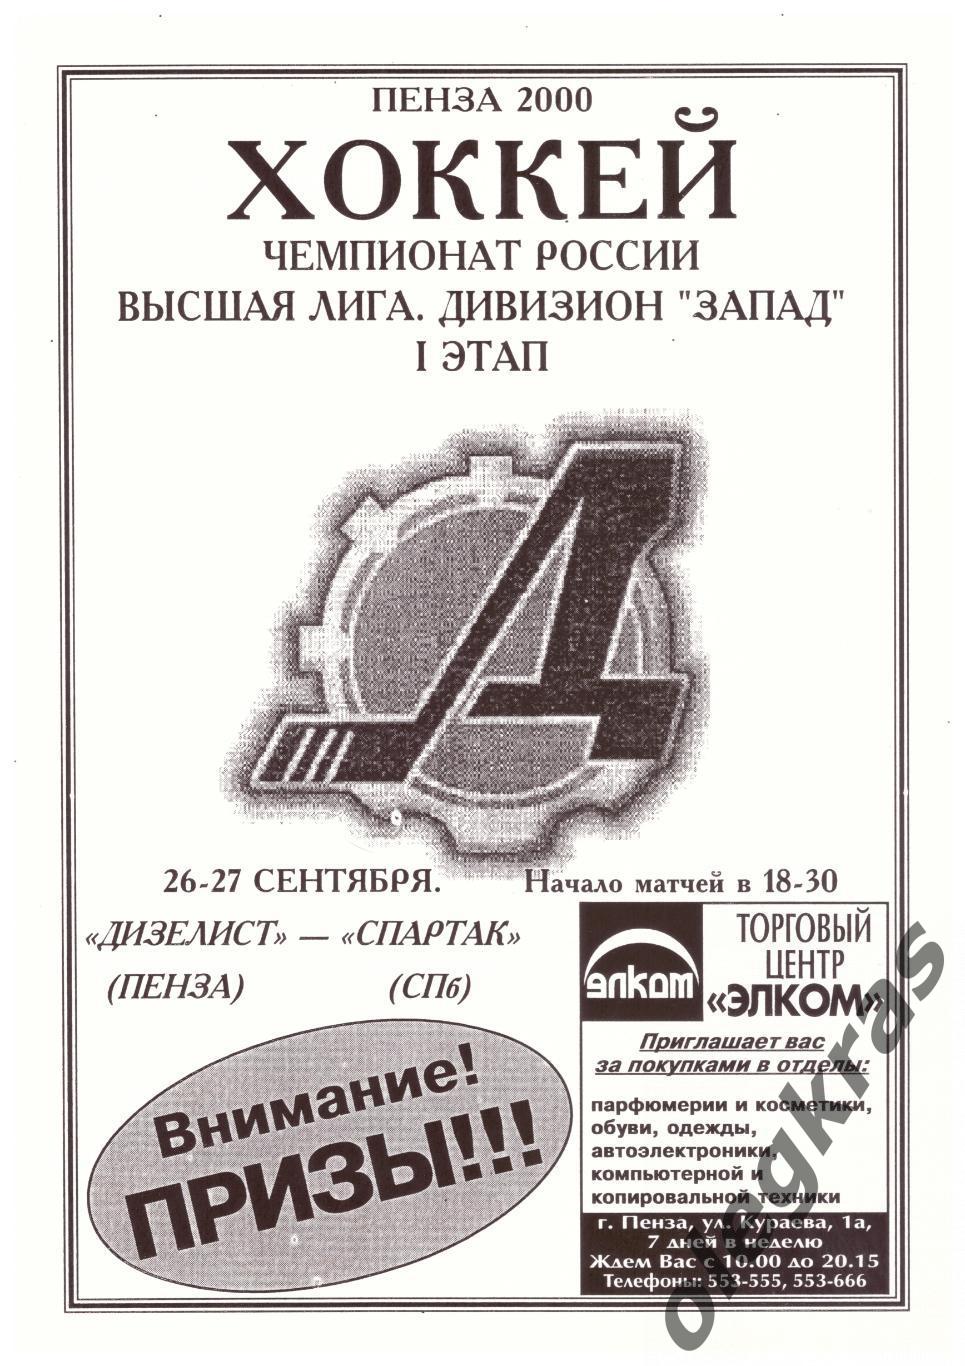 Дизелист(Пенза) - Спартак(Санкт - Петербург) - 26-27 сентября 2000 года.